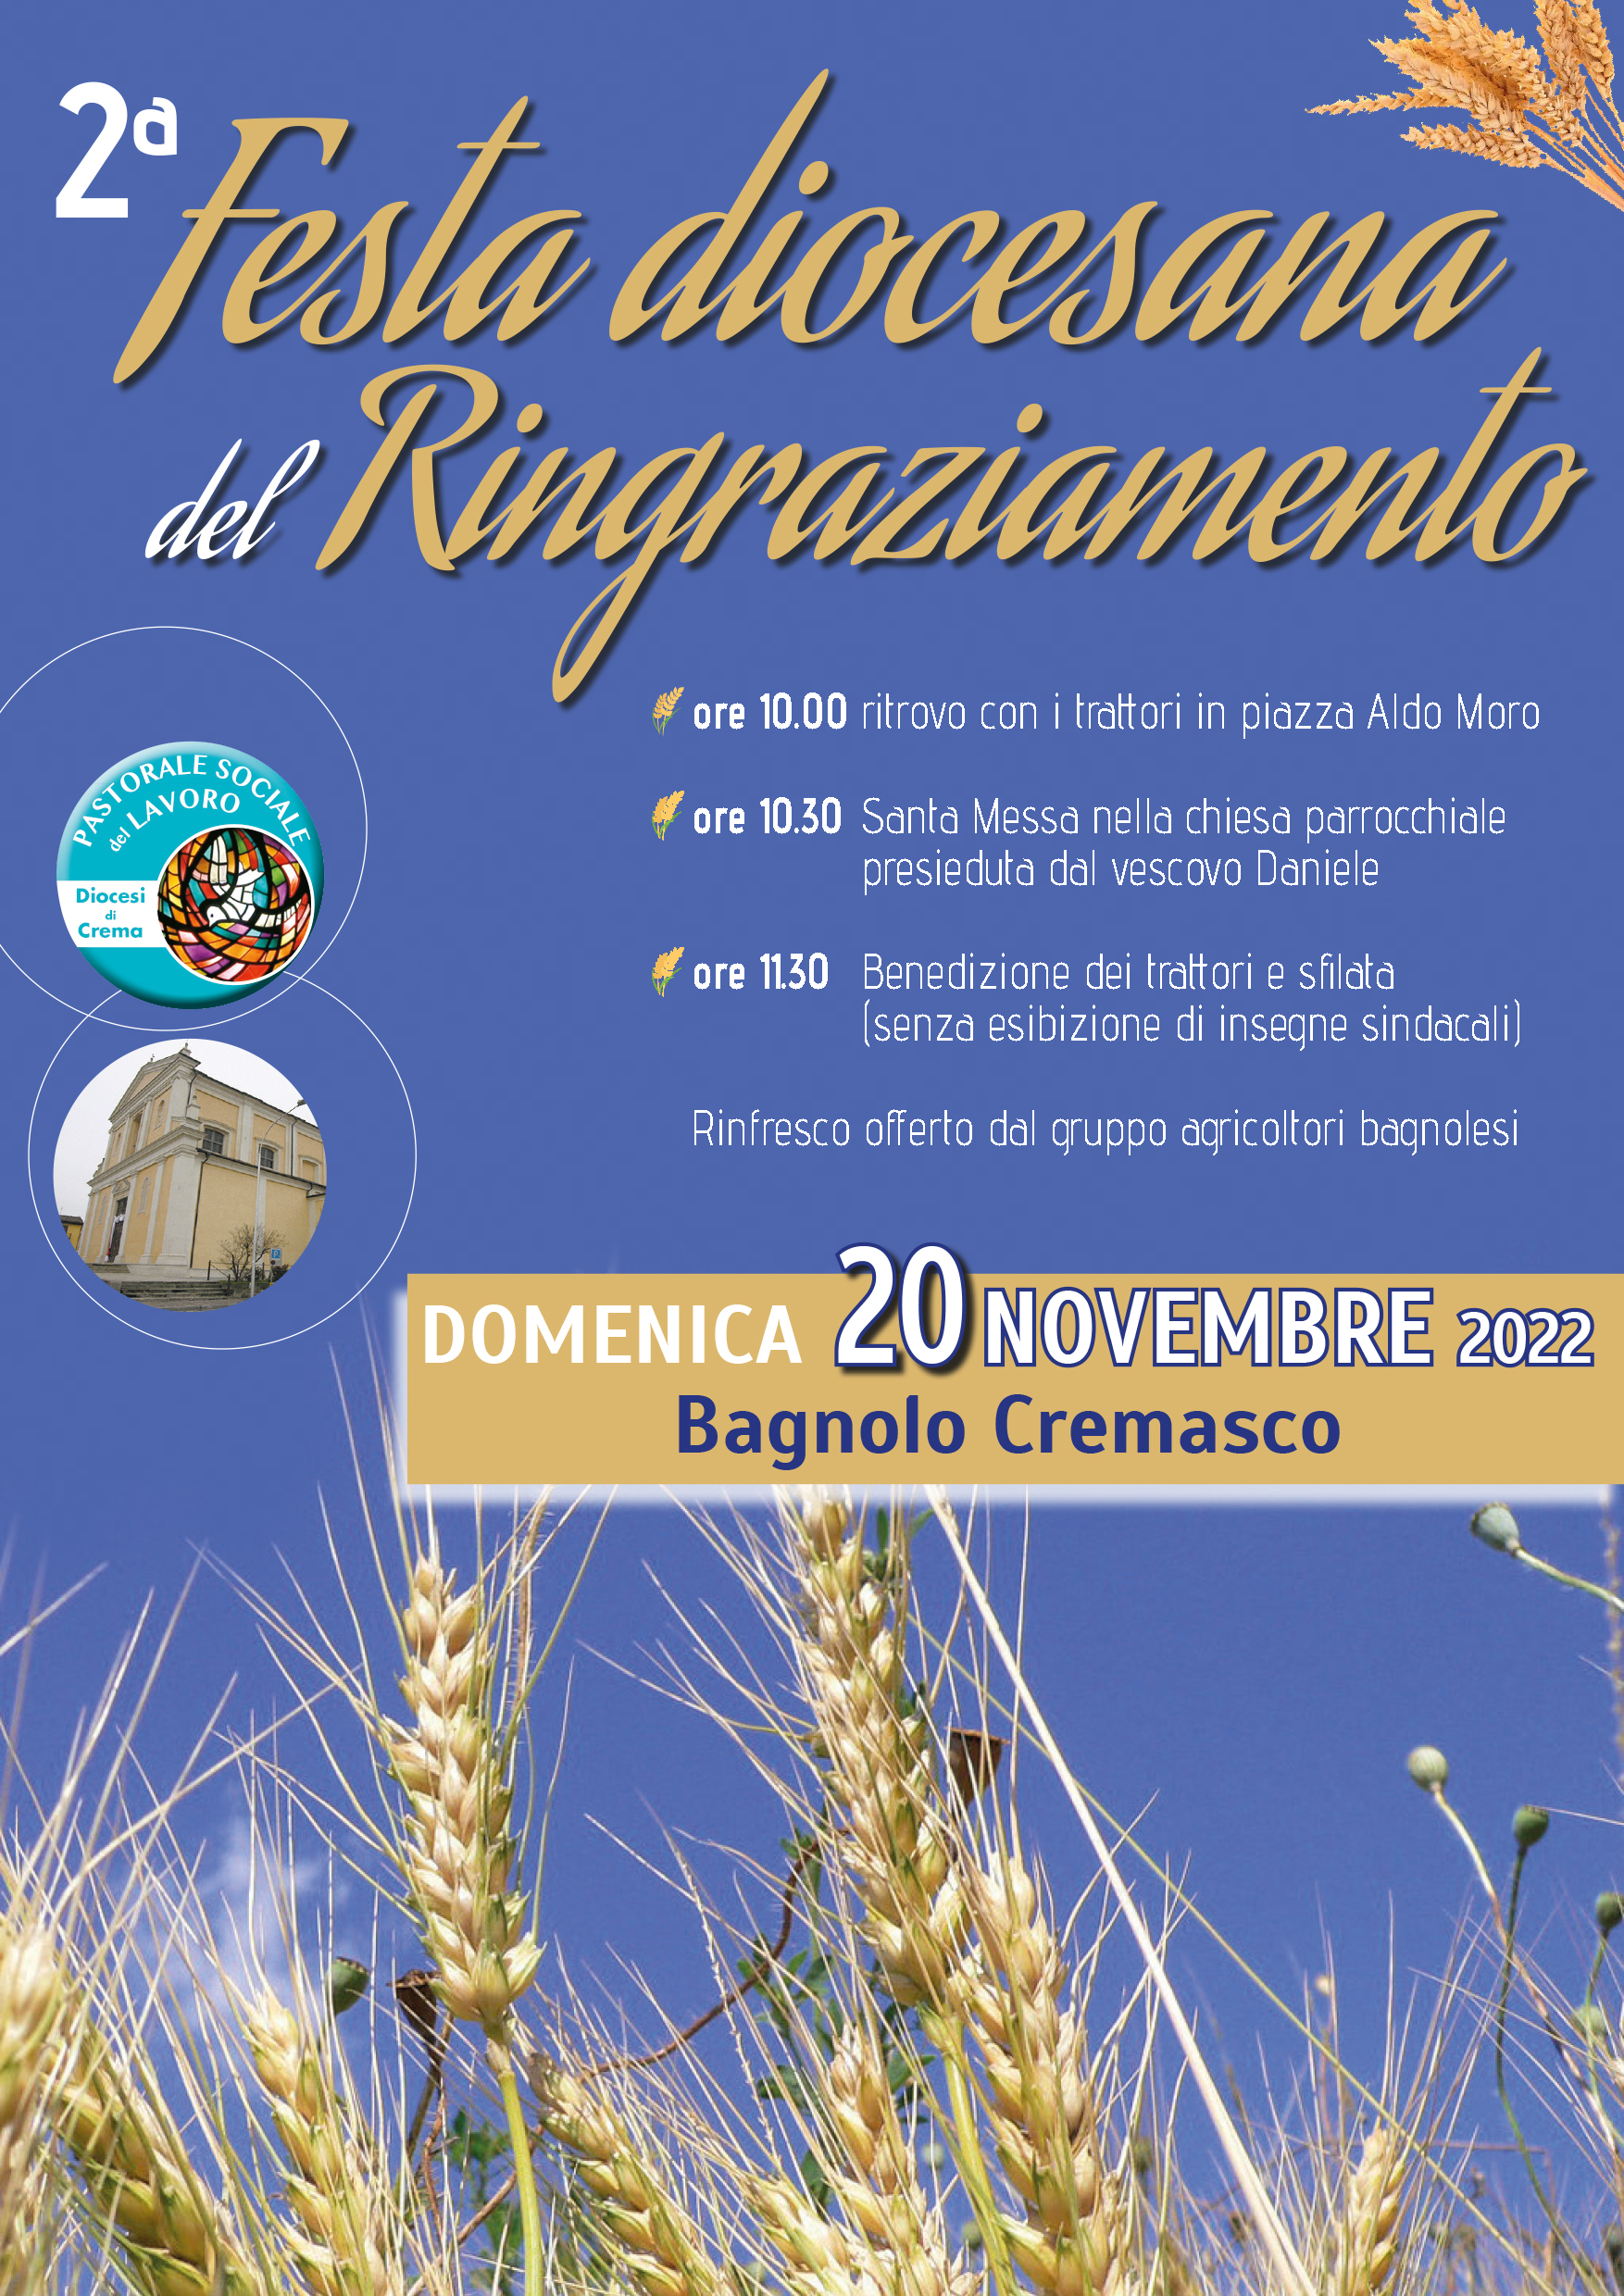 Domenica 20 novembrea Bagnolo Cremasco 2a Festa diocesana del Ringraziamento